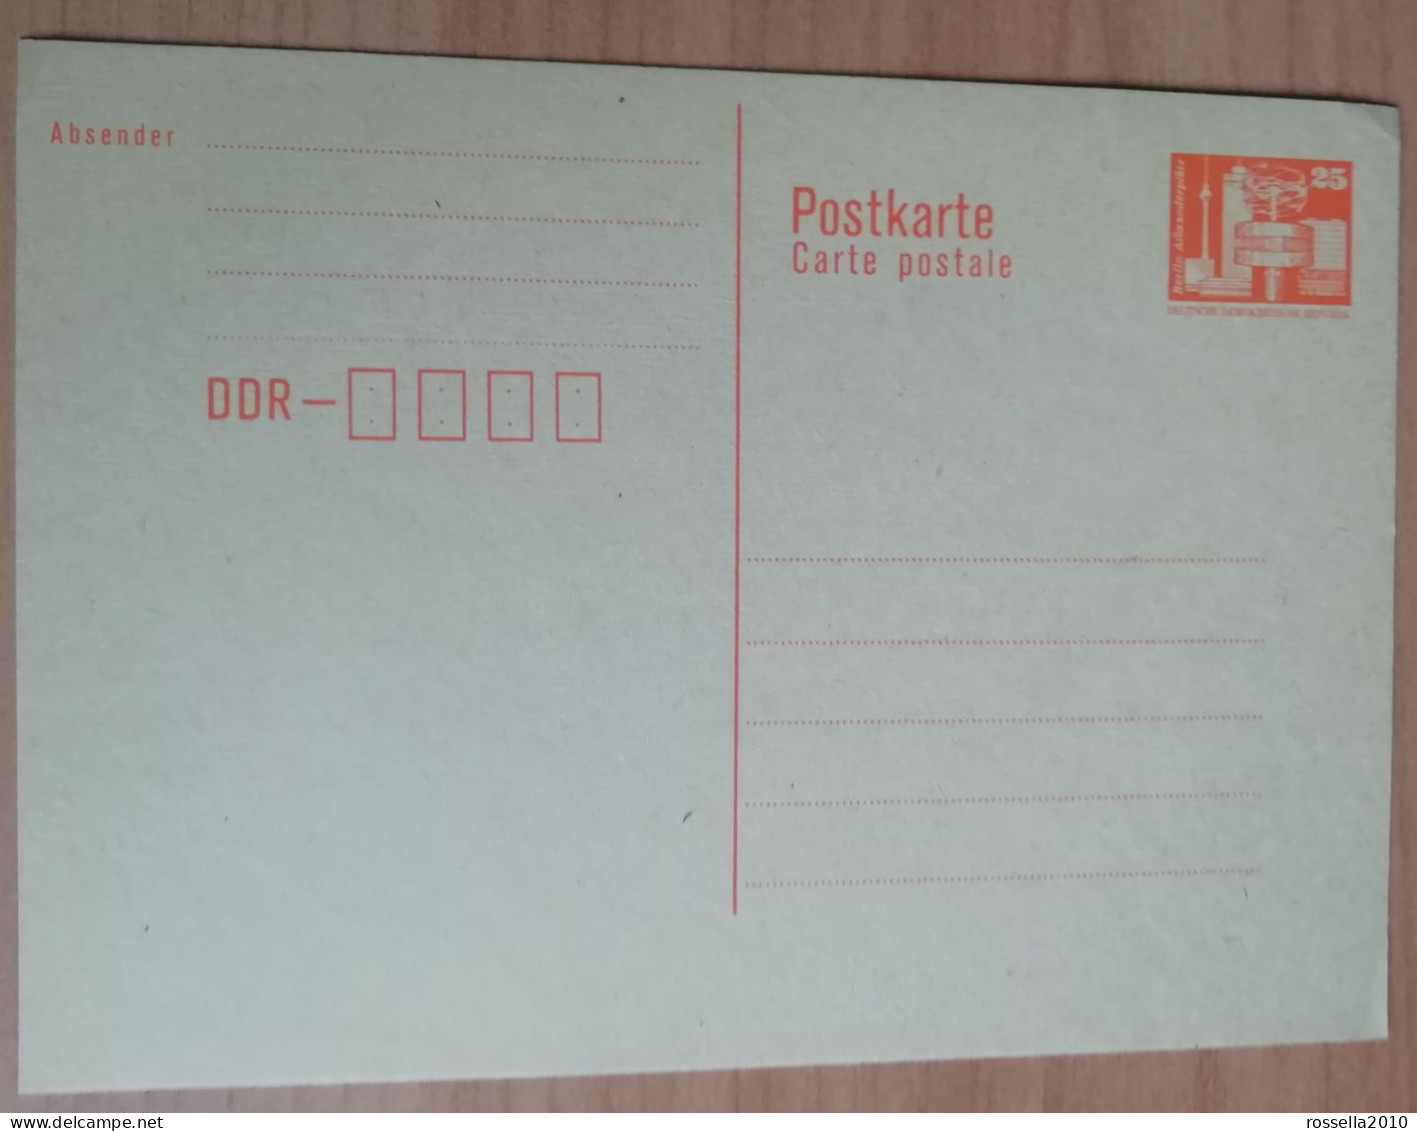 CARTOLINA INTERO POSTALE GERMANIA DDR 25PF. DEUTSCHLAND POSTKARTE - Postkarten - Ungebraucht